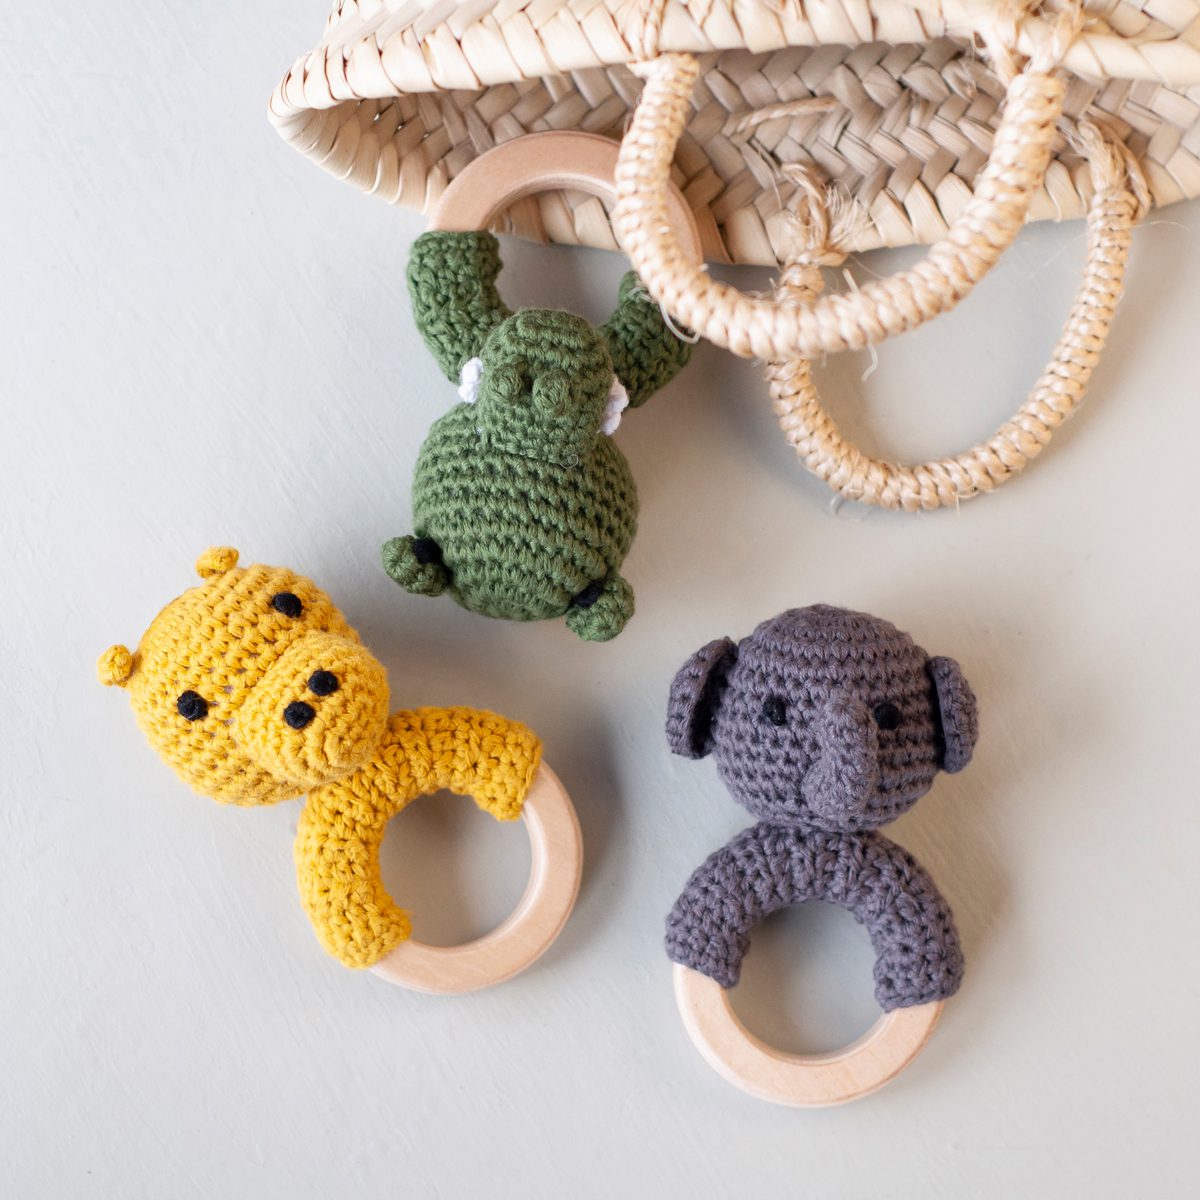 Handgemachte Häkelrasseln in 3 Tiermotiven: Nilpferd, Elefant und Krokodil. Einzeln verpackt in einer schönen Geschenktasche aus Baumwolle.